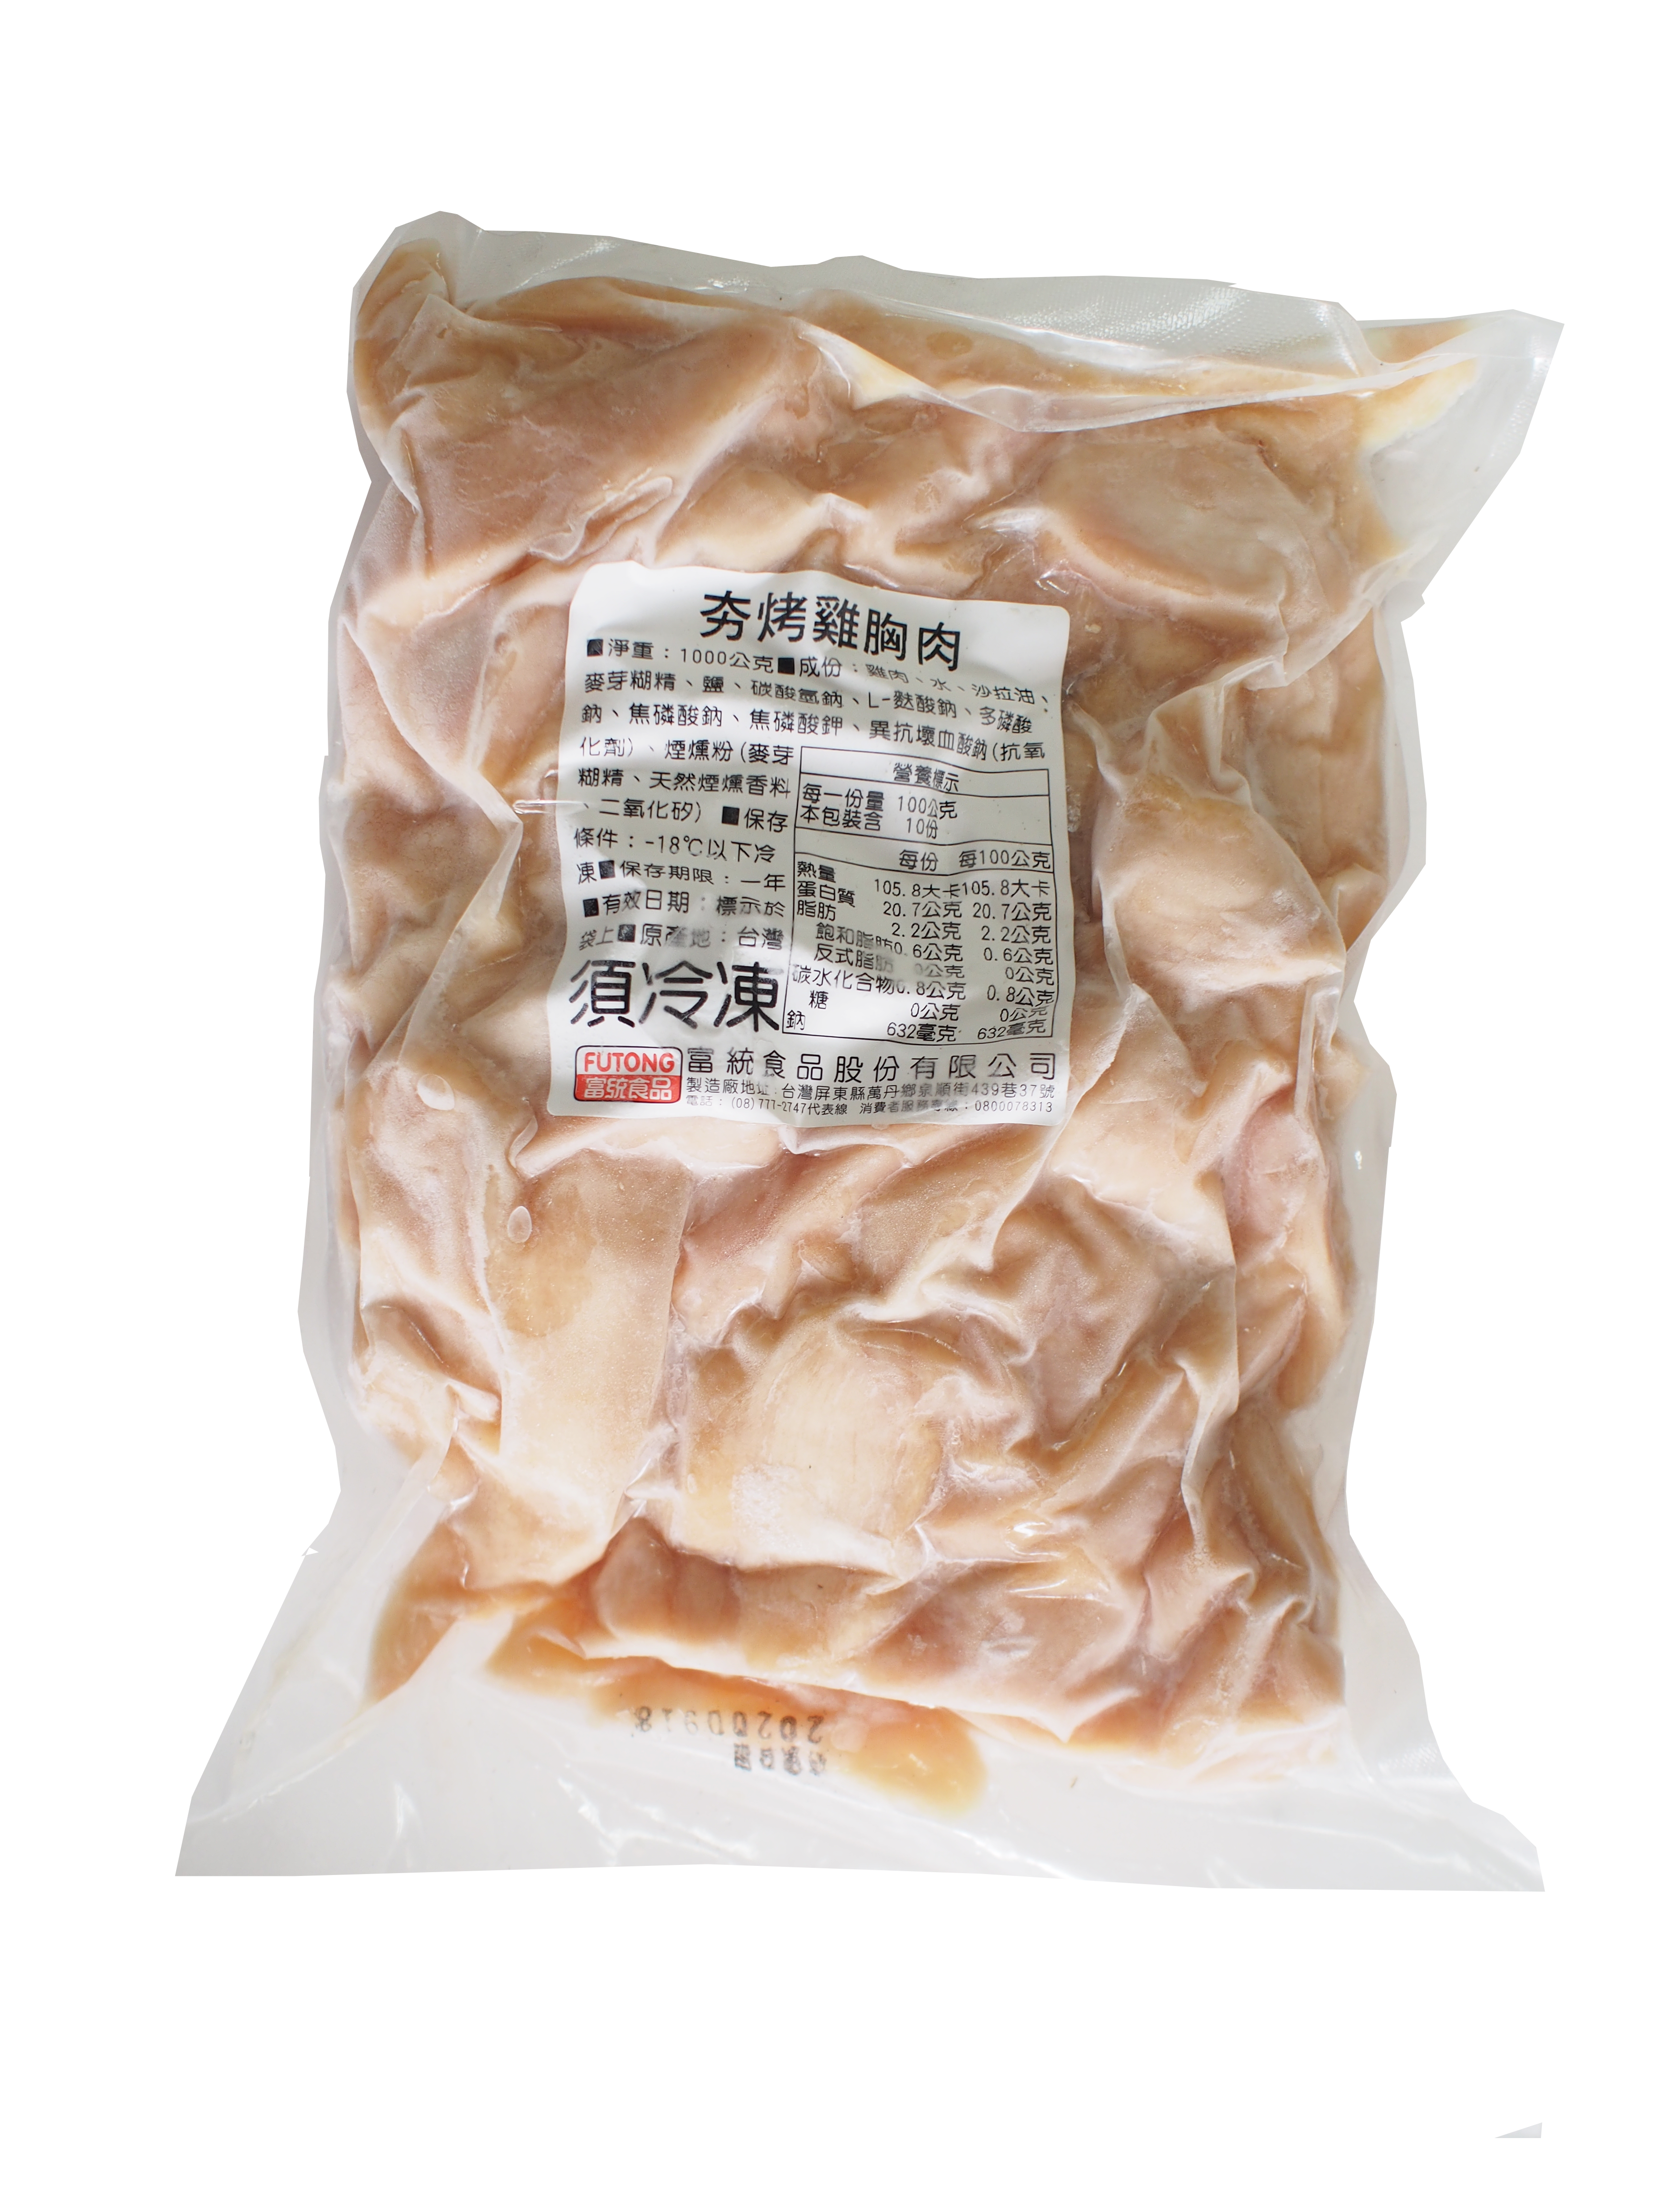 【富統食品】低脂熟雞胸肉1kg/包 夯烤雞胸肉 微燻雞肉片 燻雞 嫩雞胸